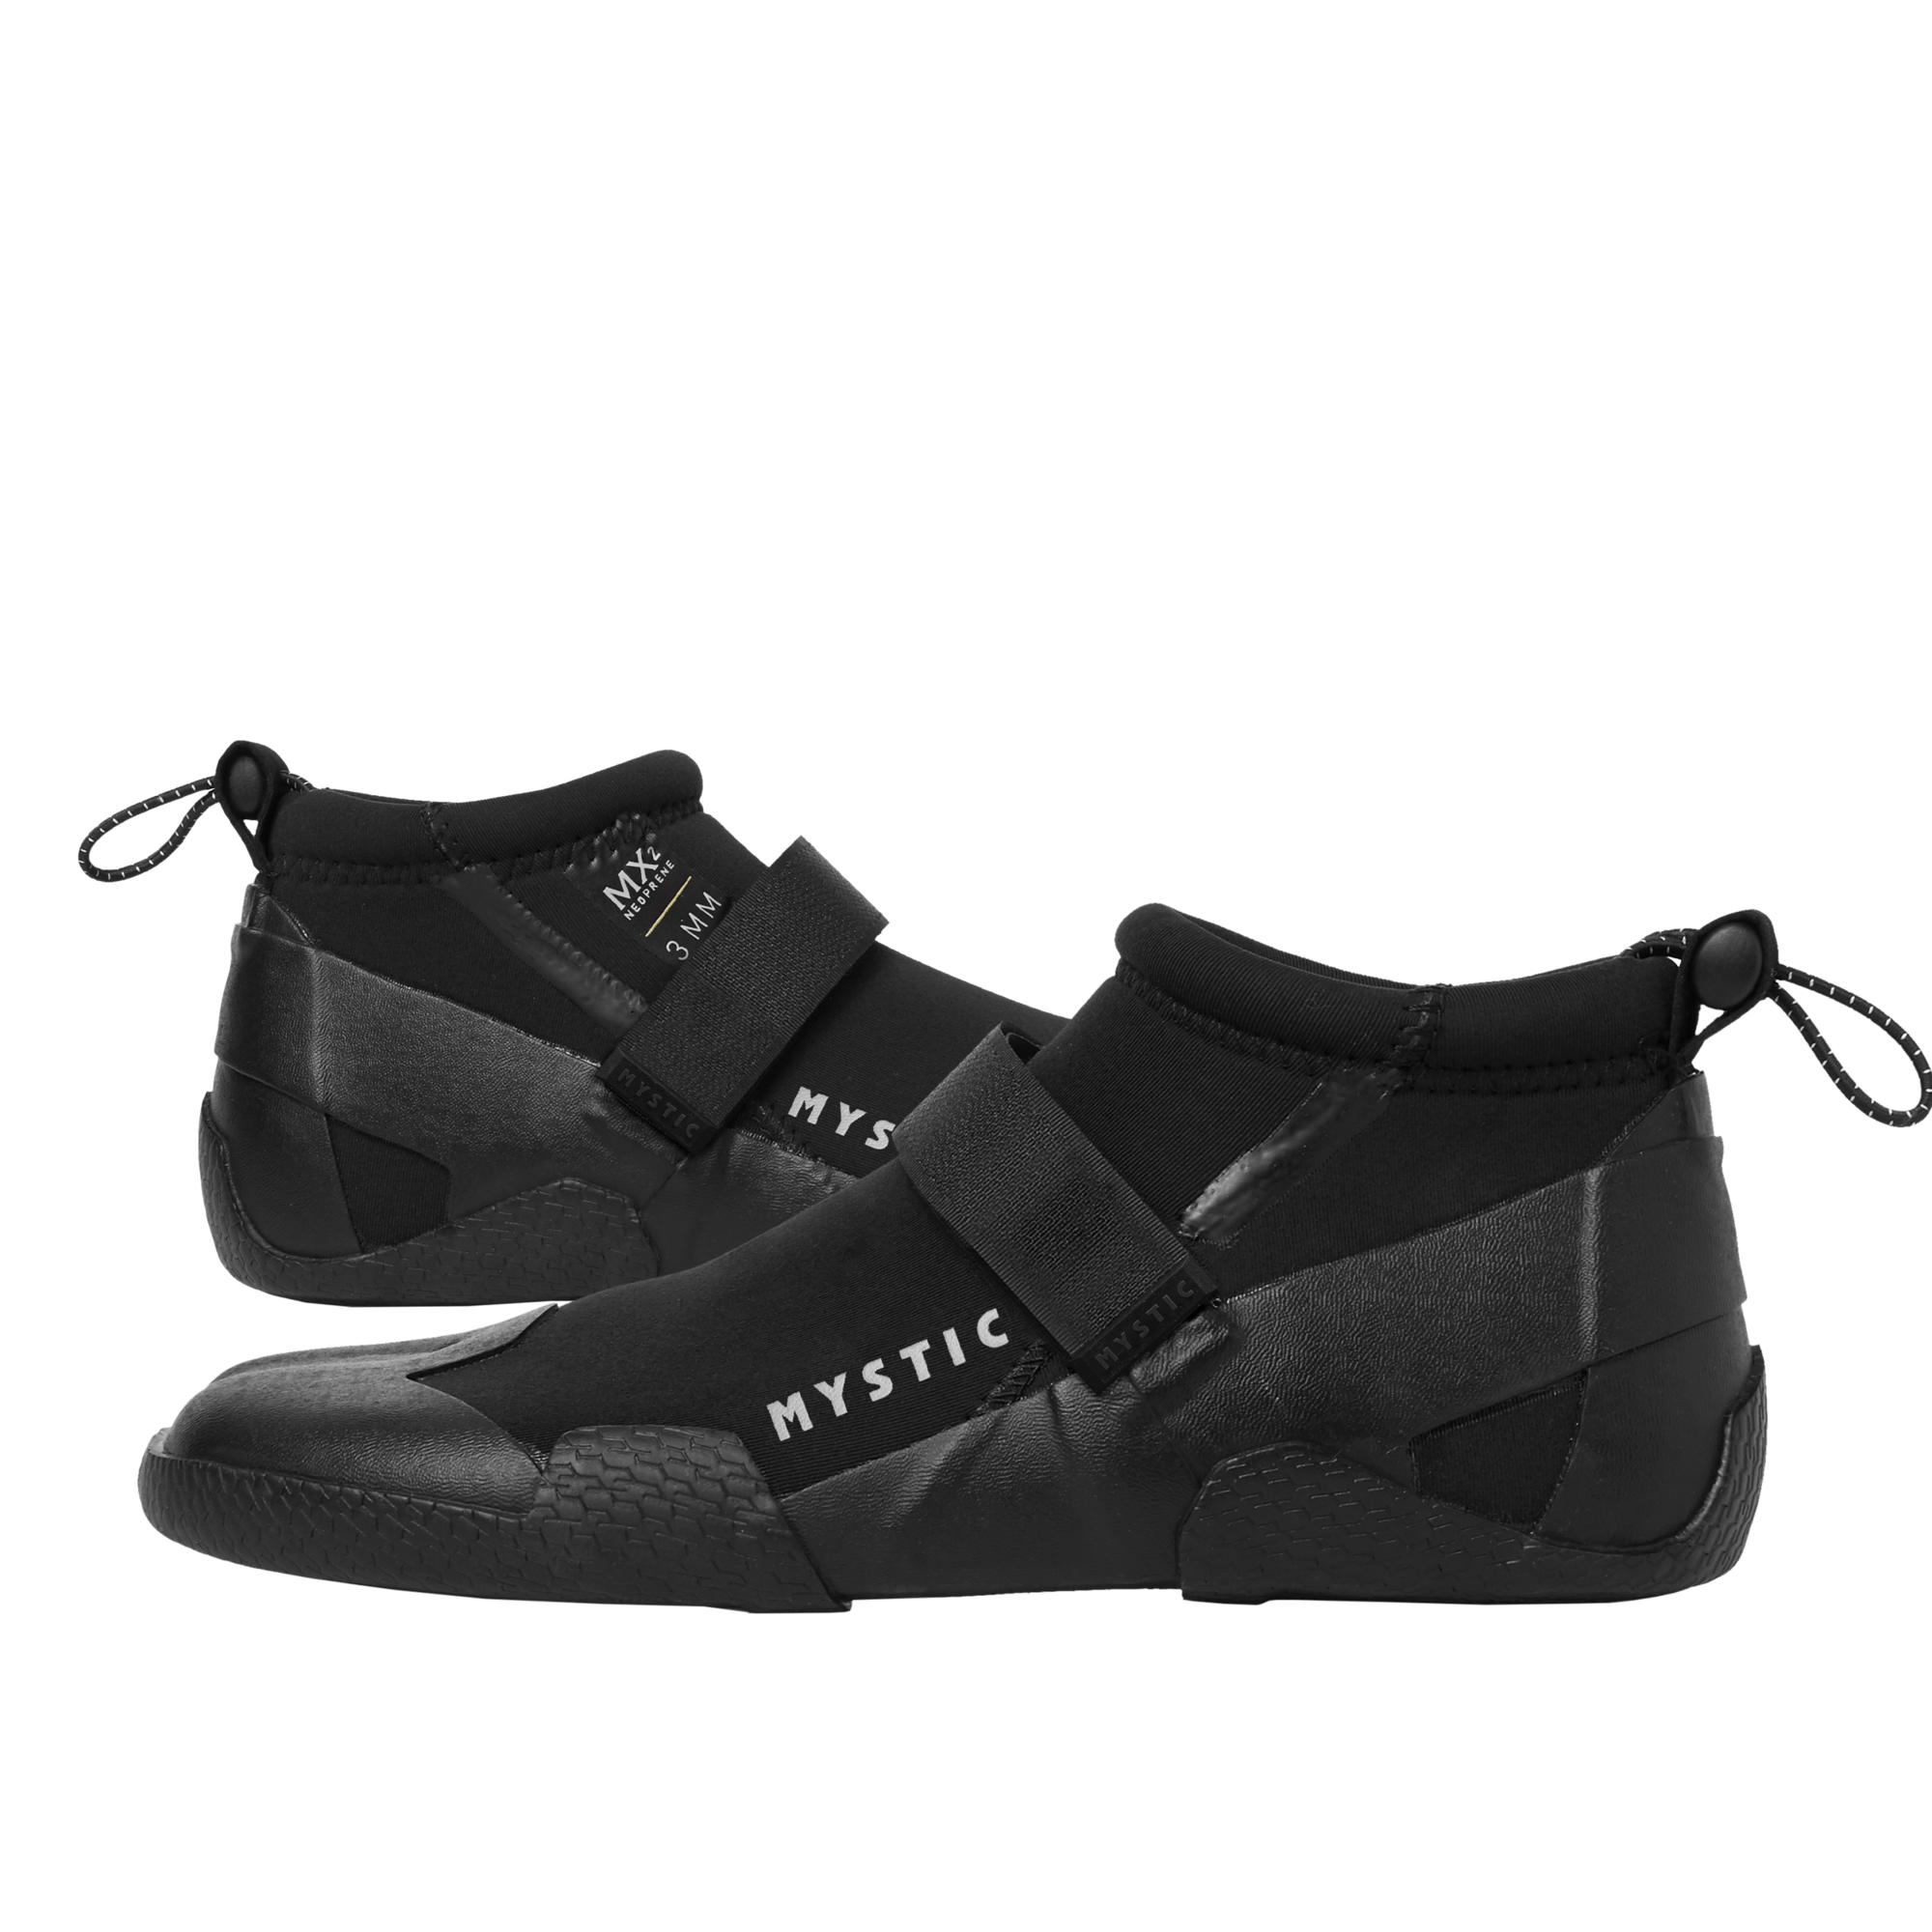 Mystic roam schoenen 3mm split toe reef black